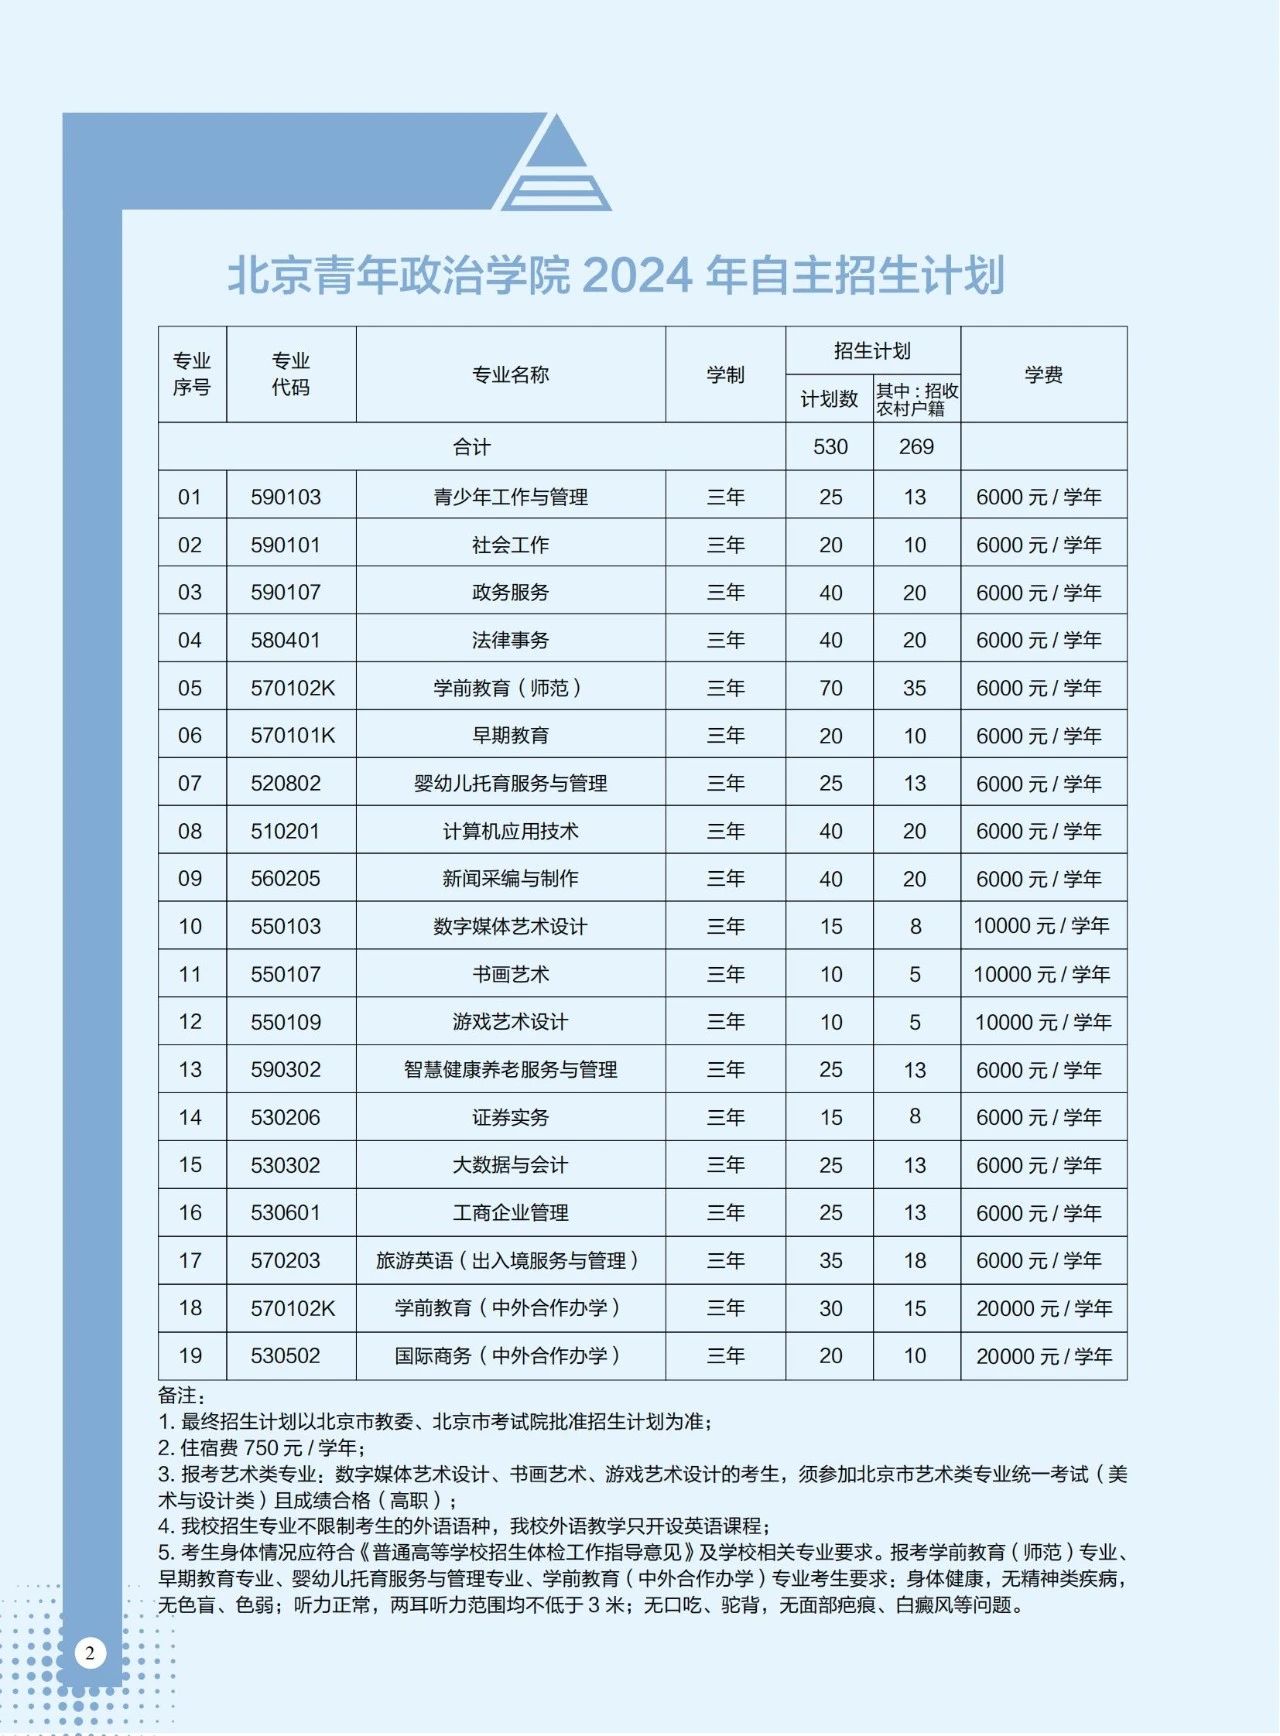 2024年北京青年政治学院自主招生计划